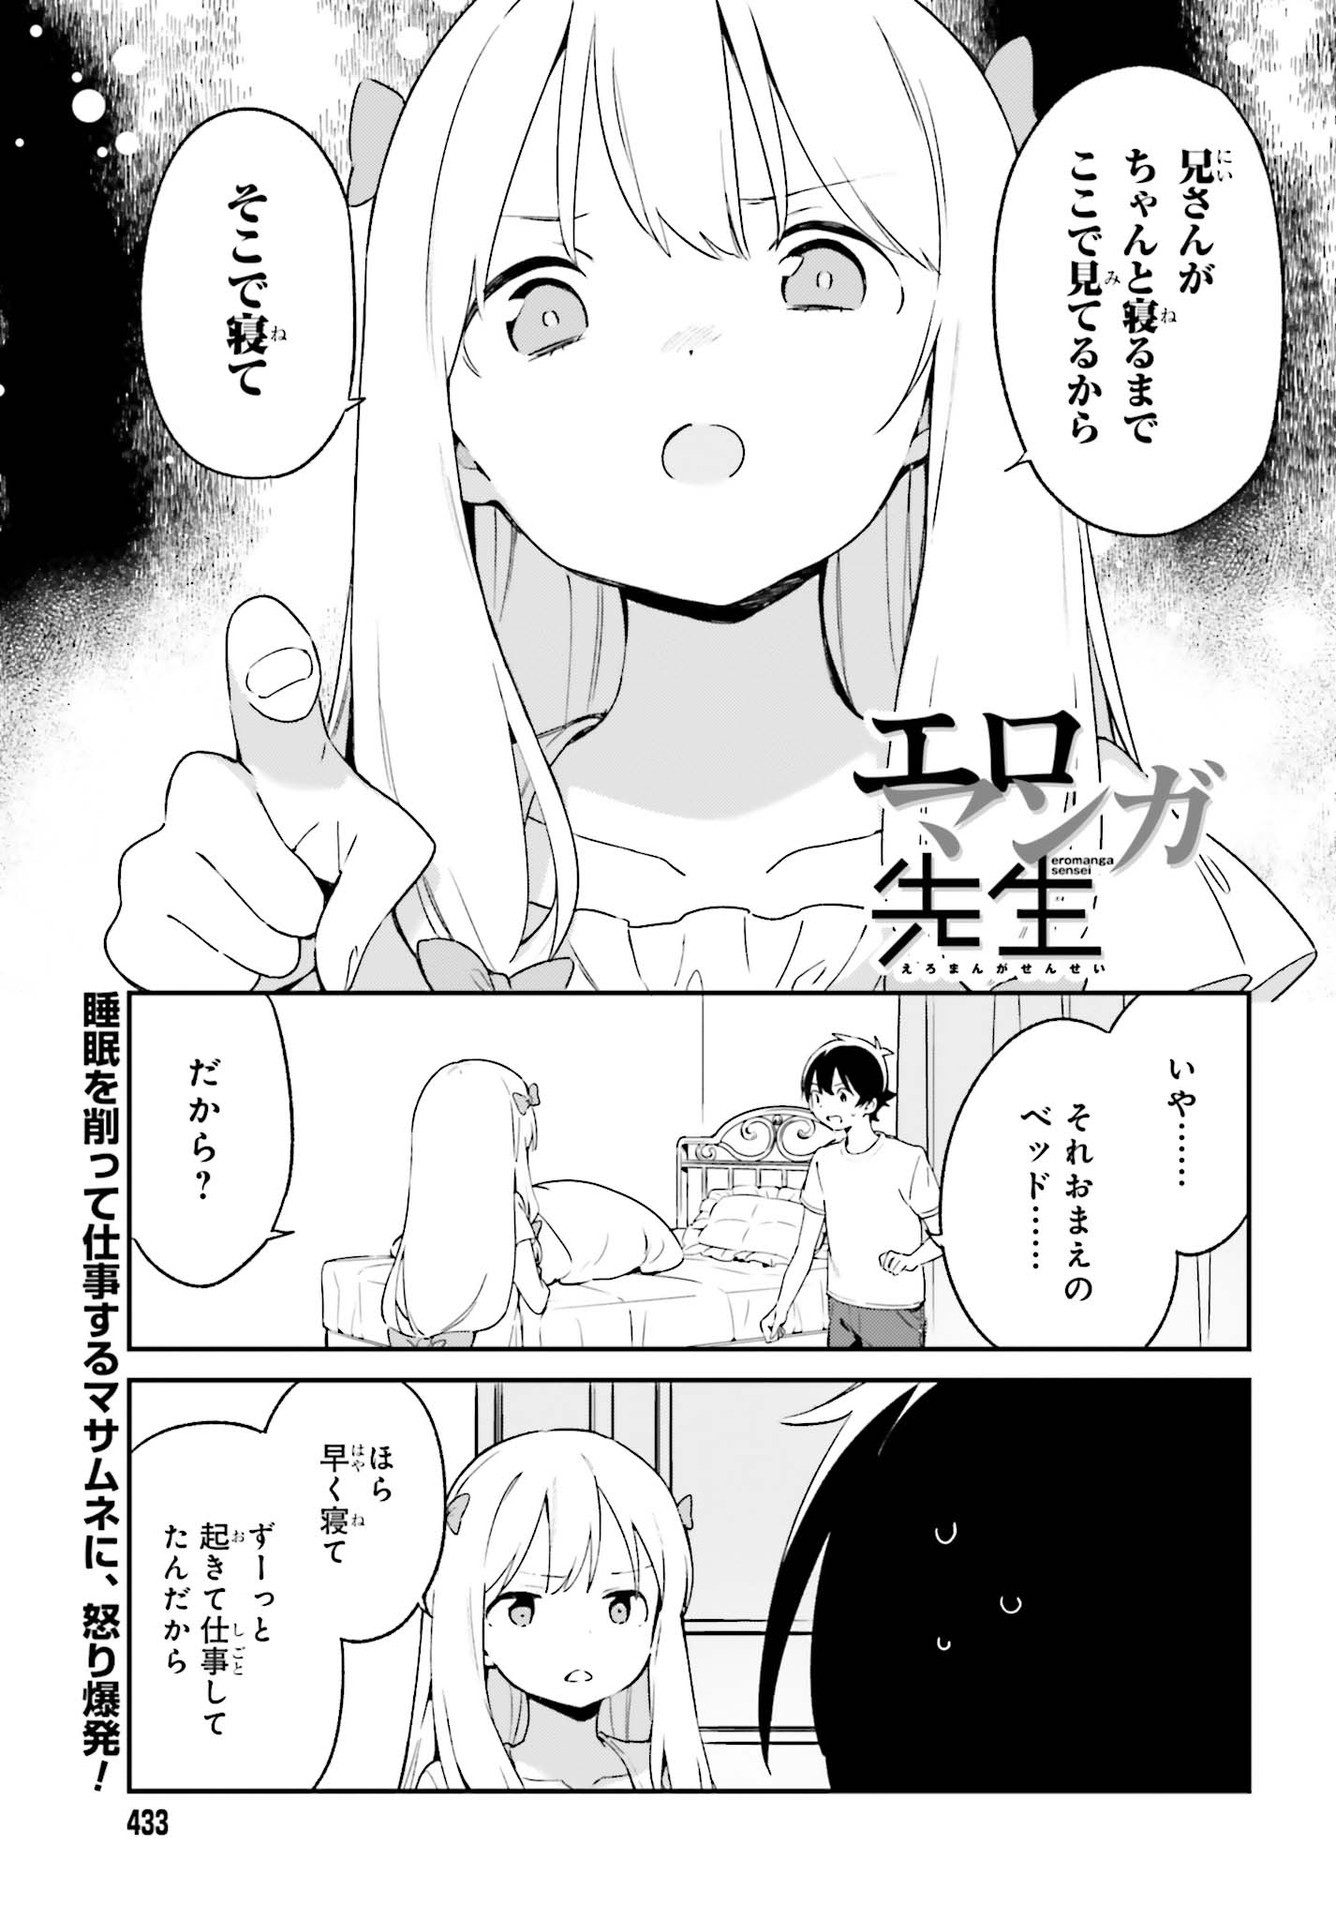 Ero Manga Sensei - Chapter 76 - Page 1